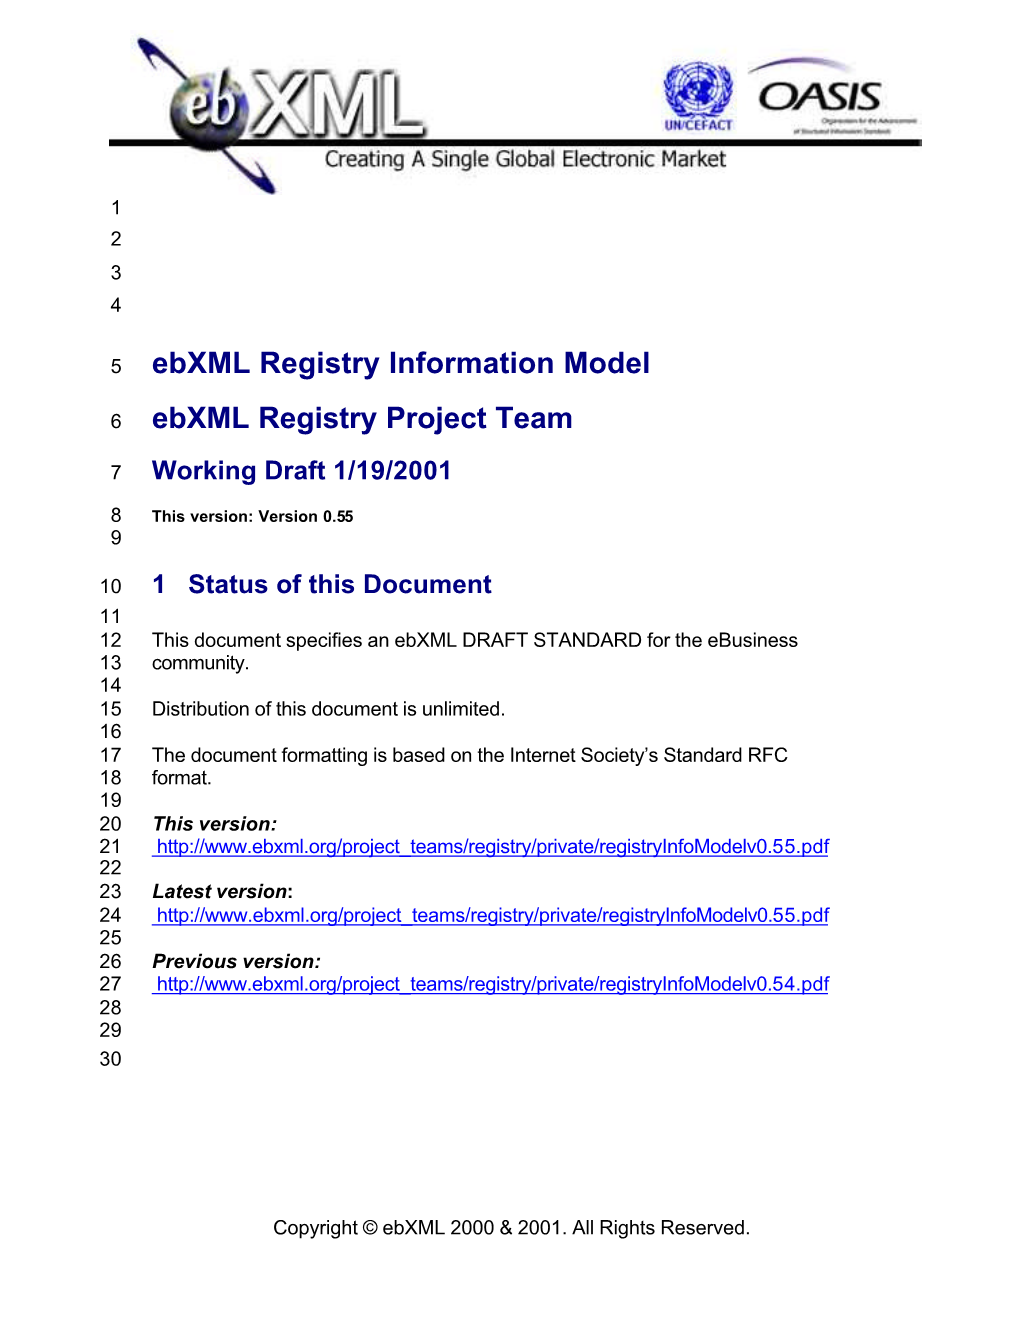 Ebxml Registry Information Model